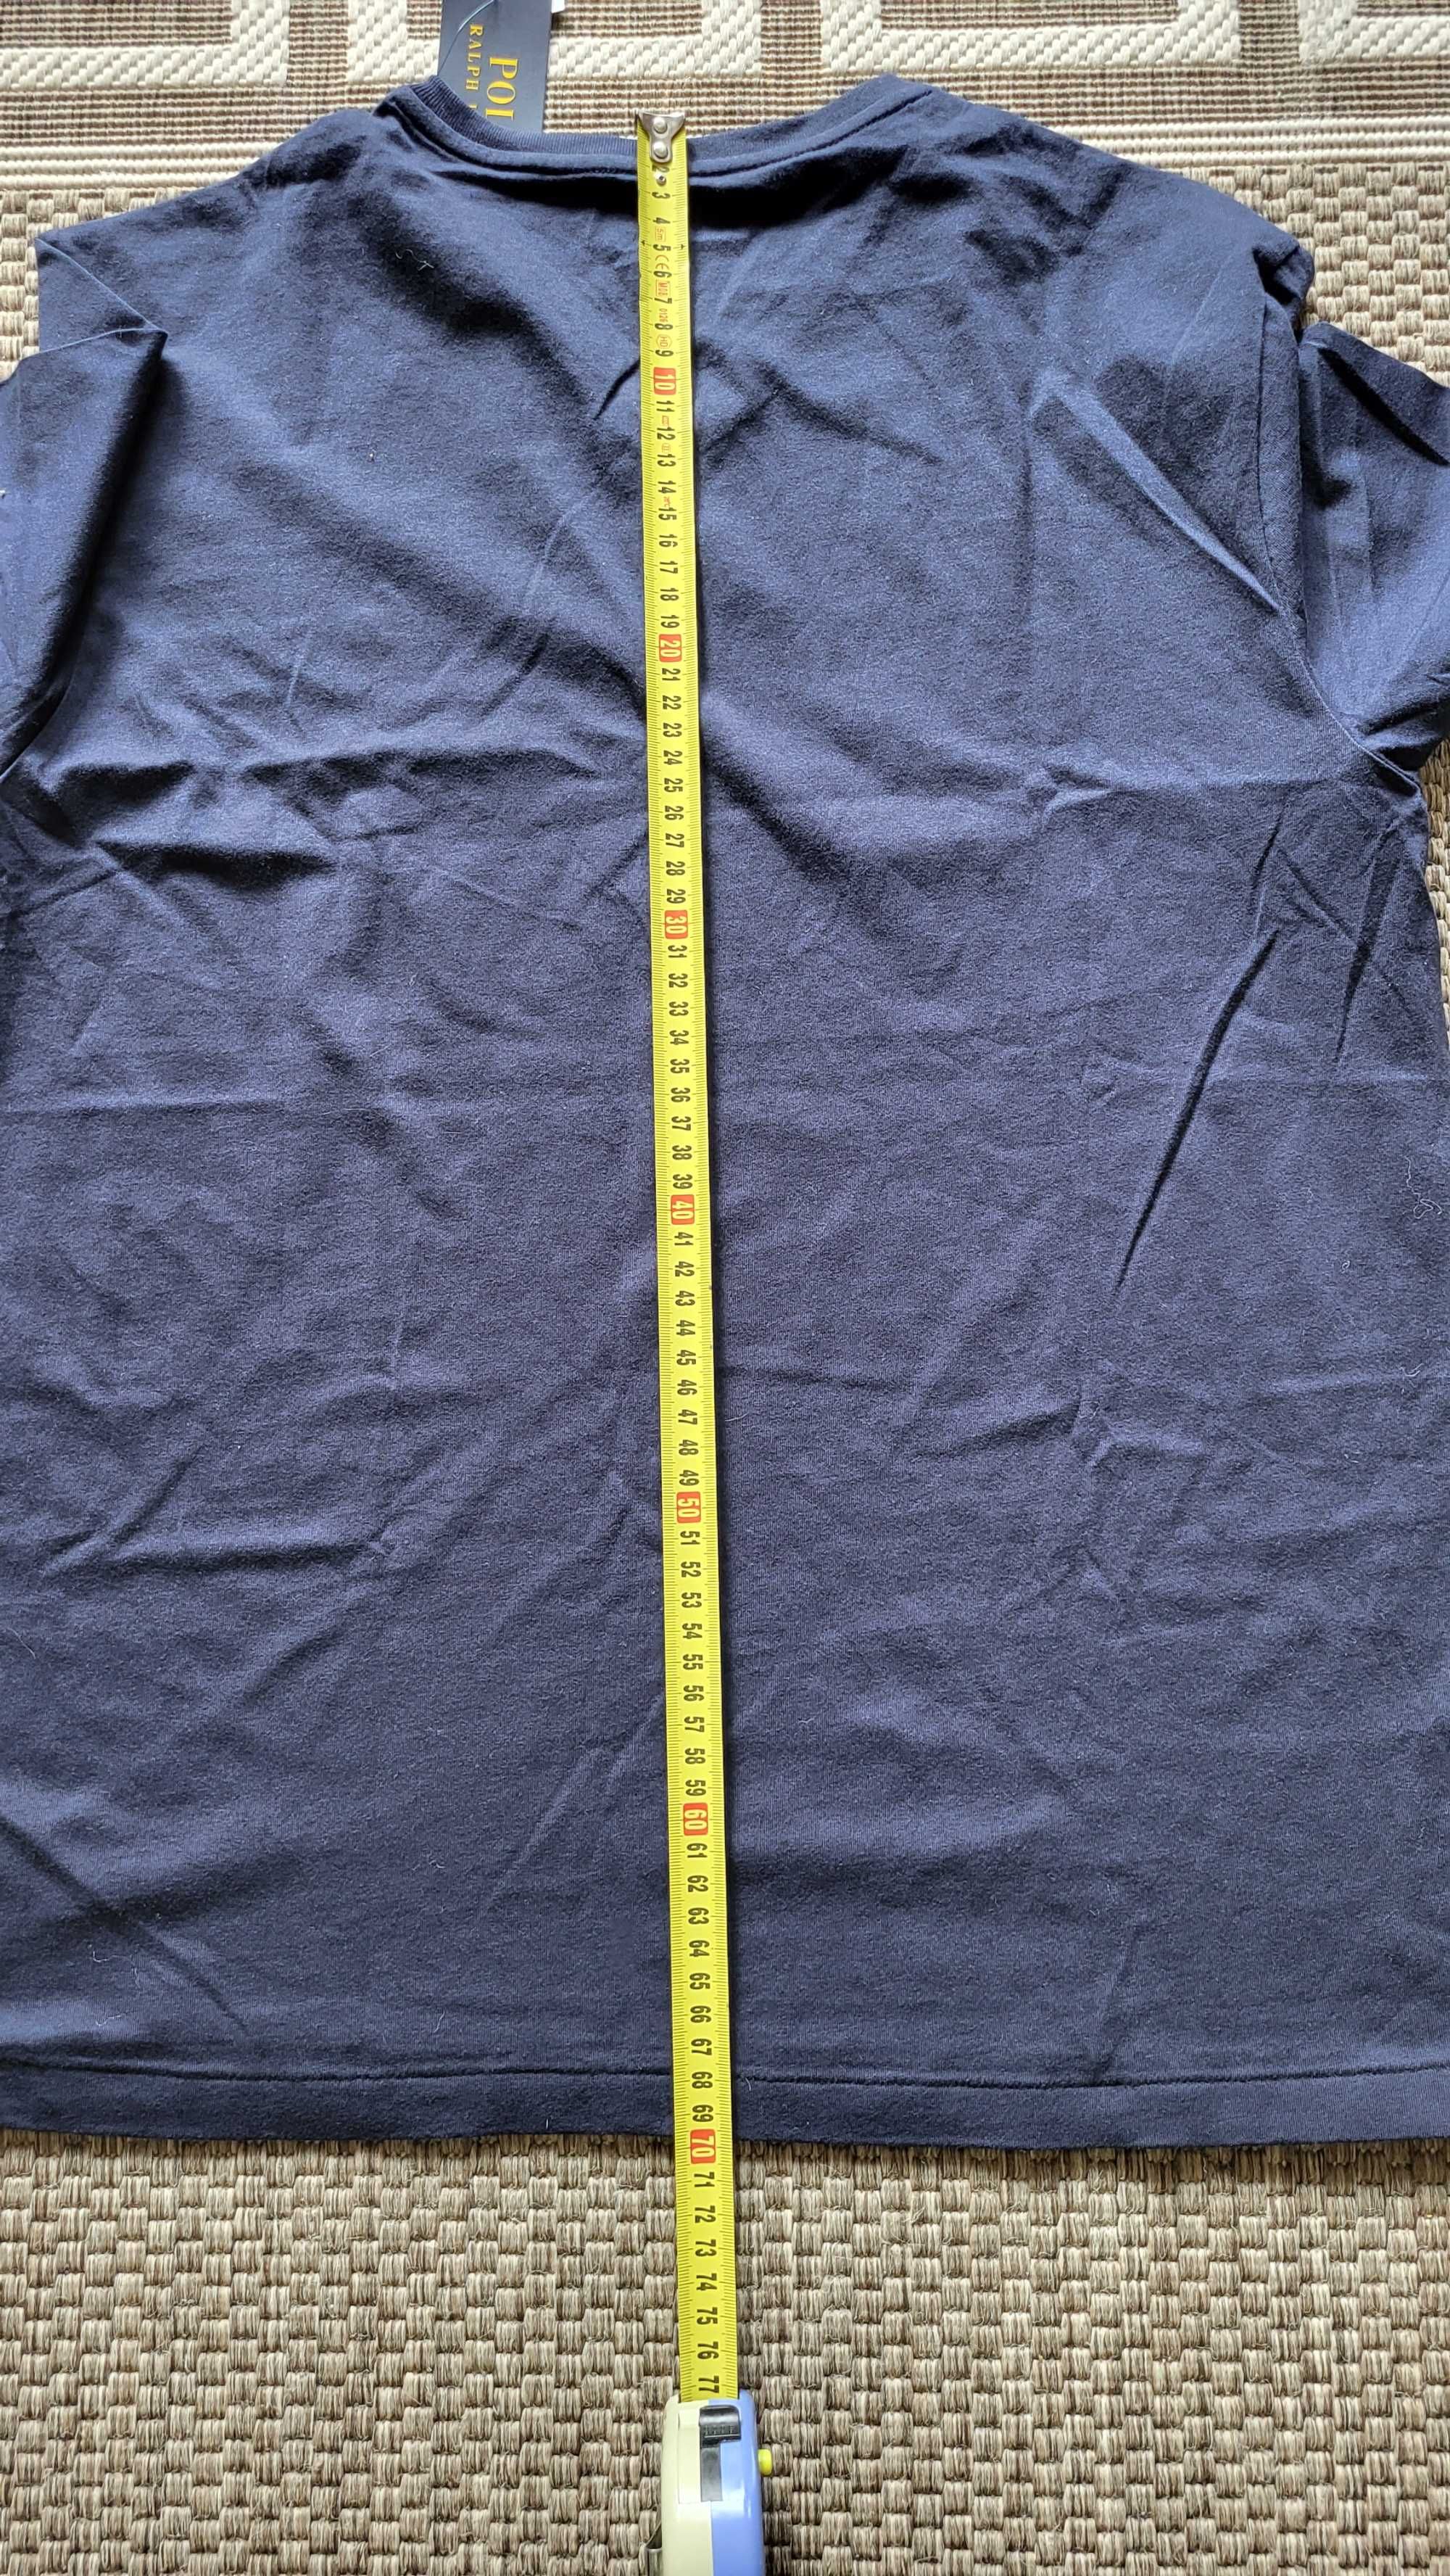 Ralph Lauren 2 koszulki rozm.M/M 130zl + kw za sztuke wysylka pobranie